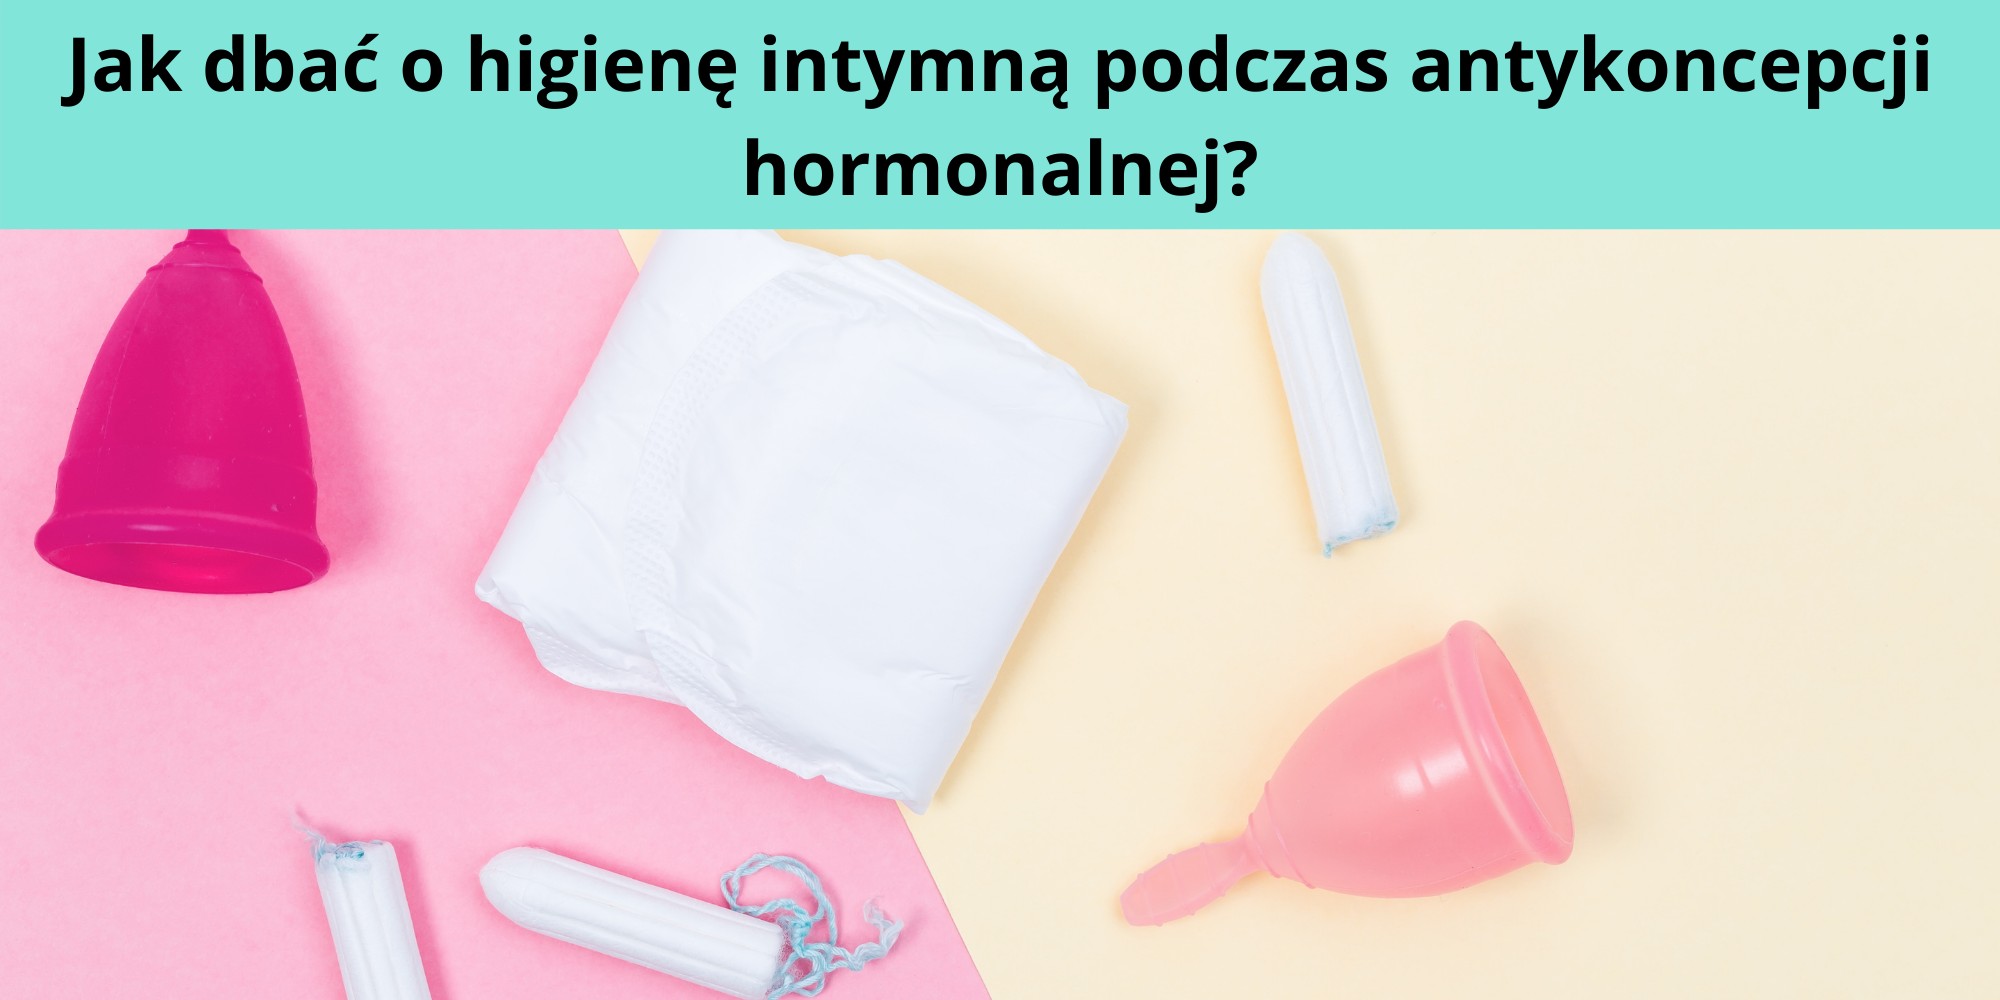 higiena intymna podczas antykoncepcji hormonalnej